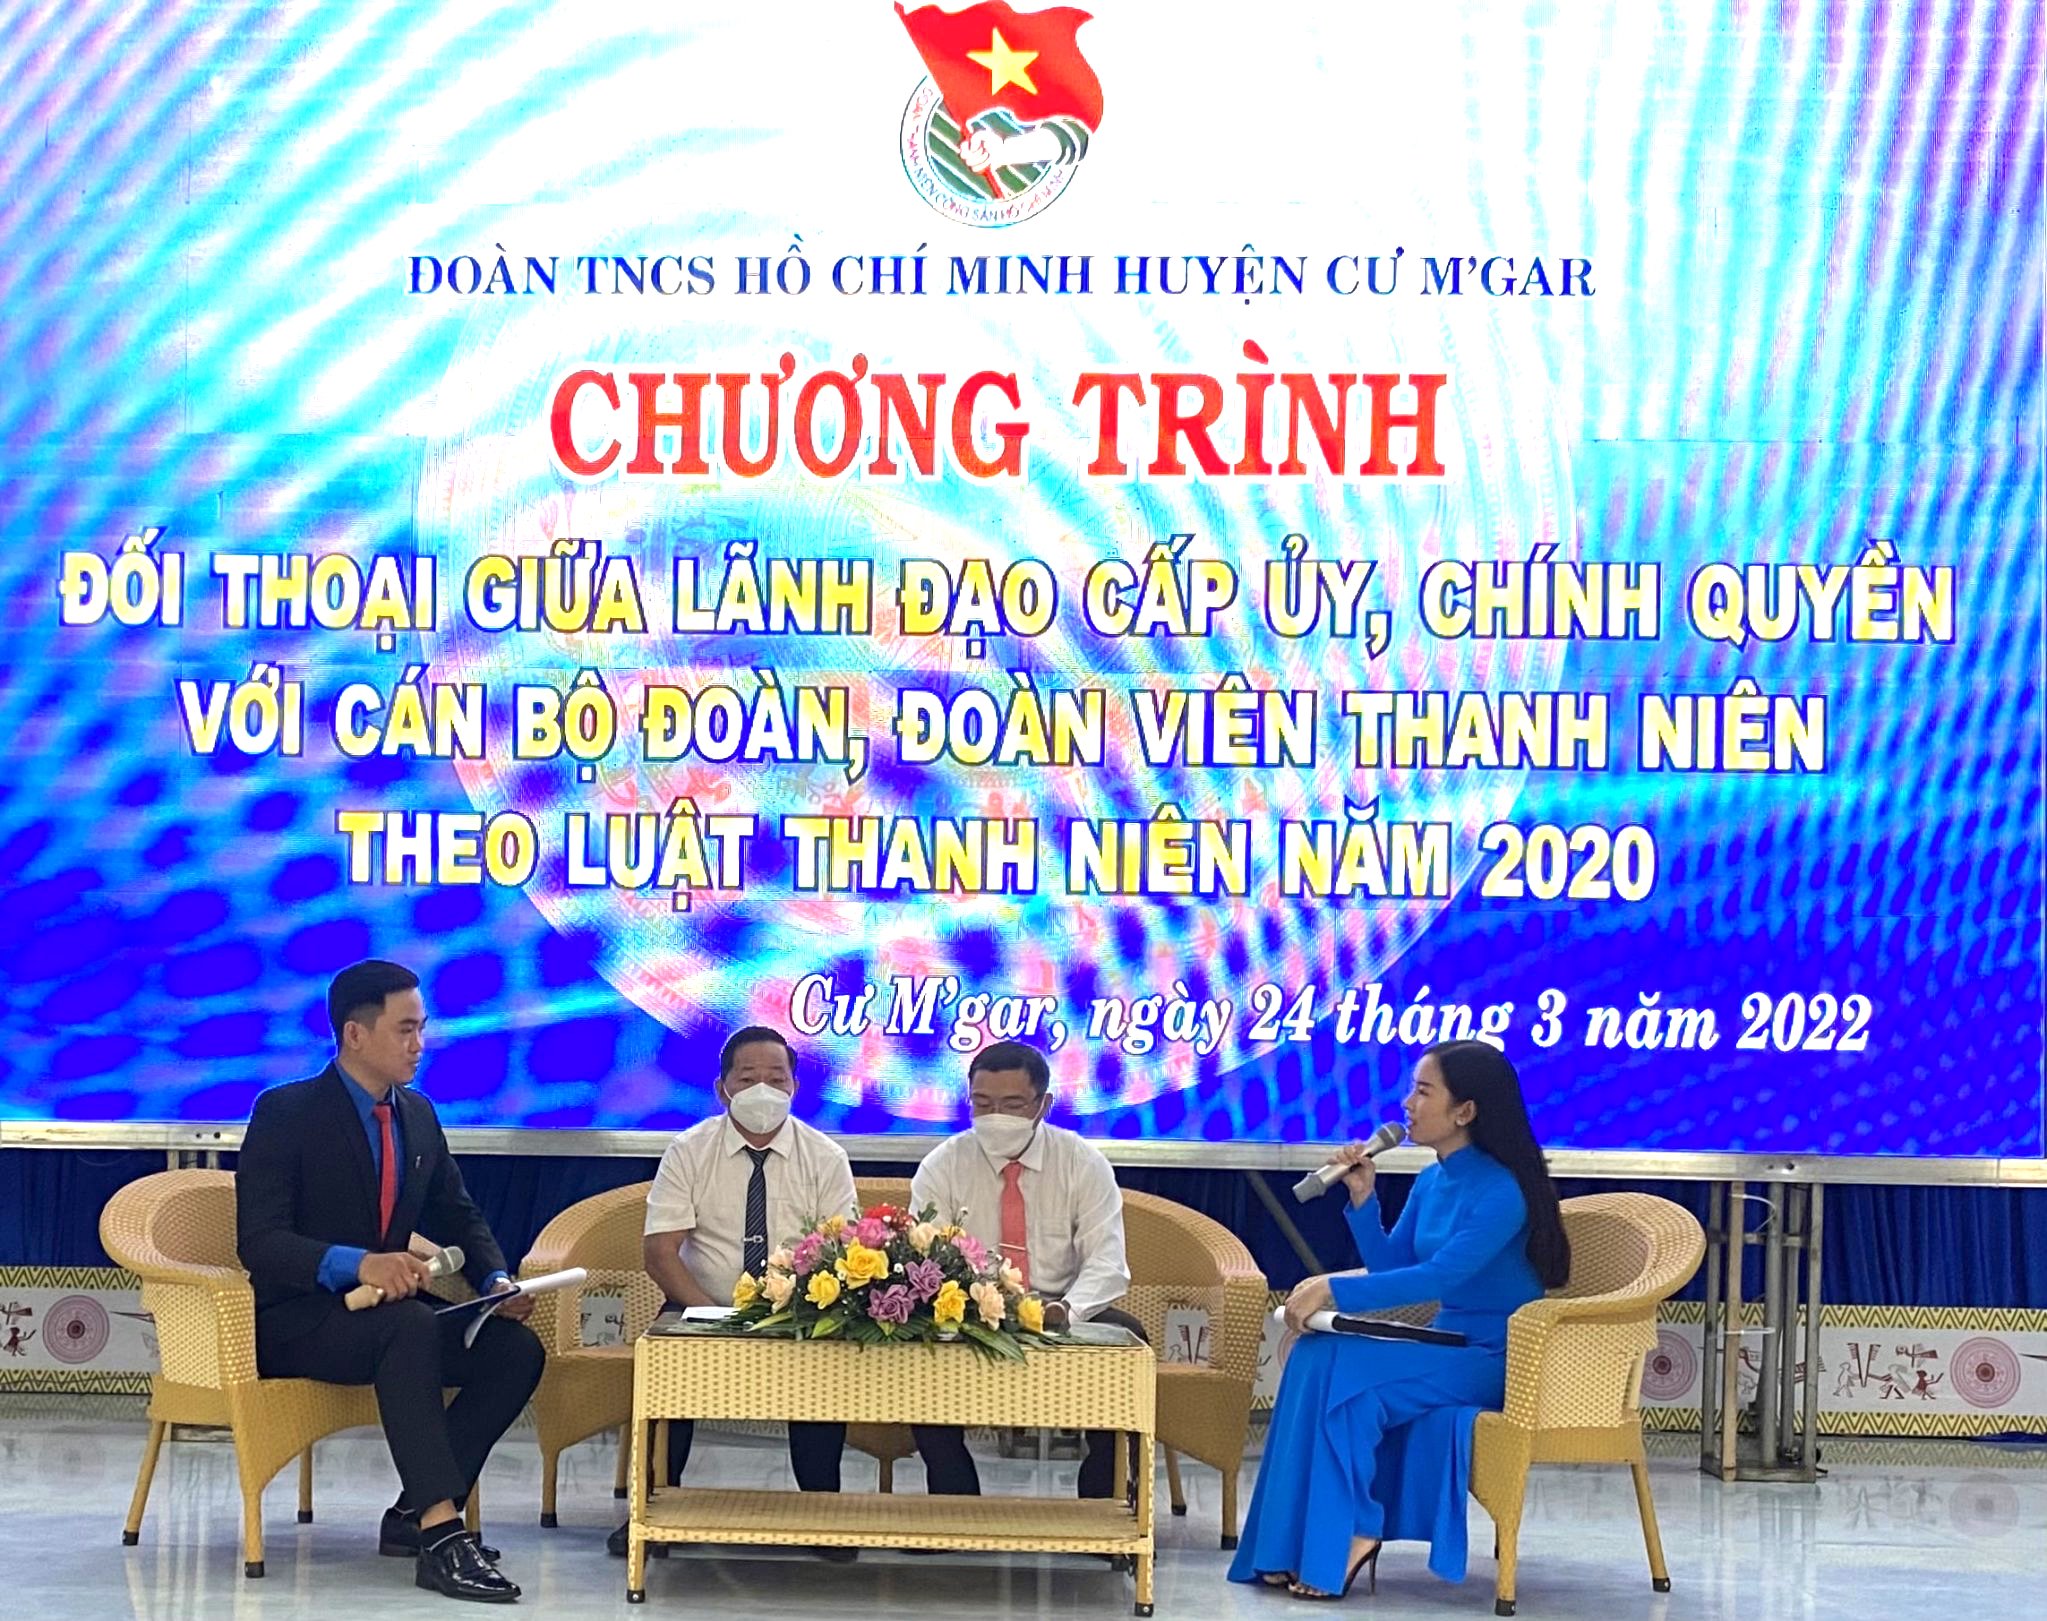 Huyện Cư M’gar kỷ niệm 91 năm ngày thành lập Đoàn TNCS Hồ Chí Minh